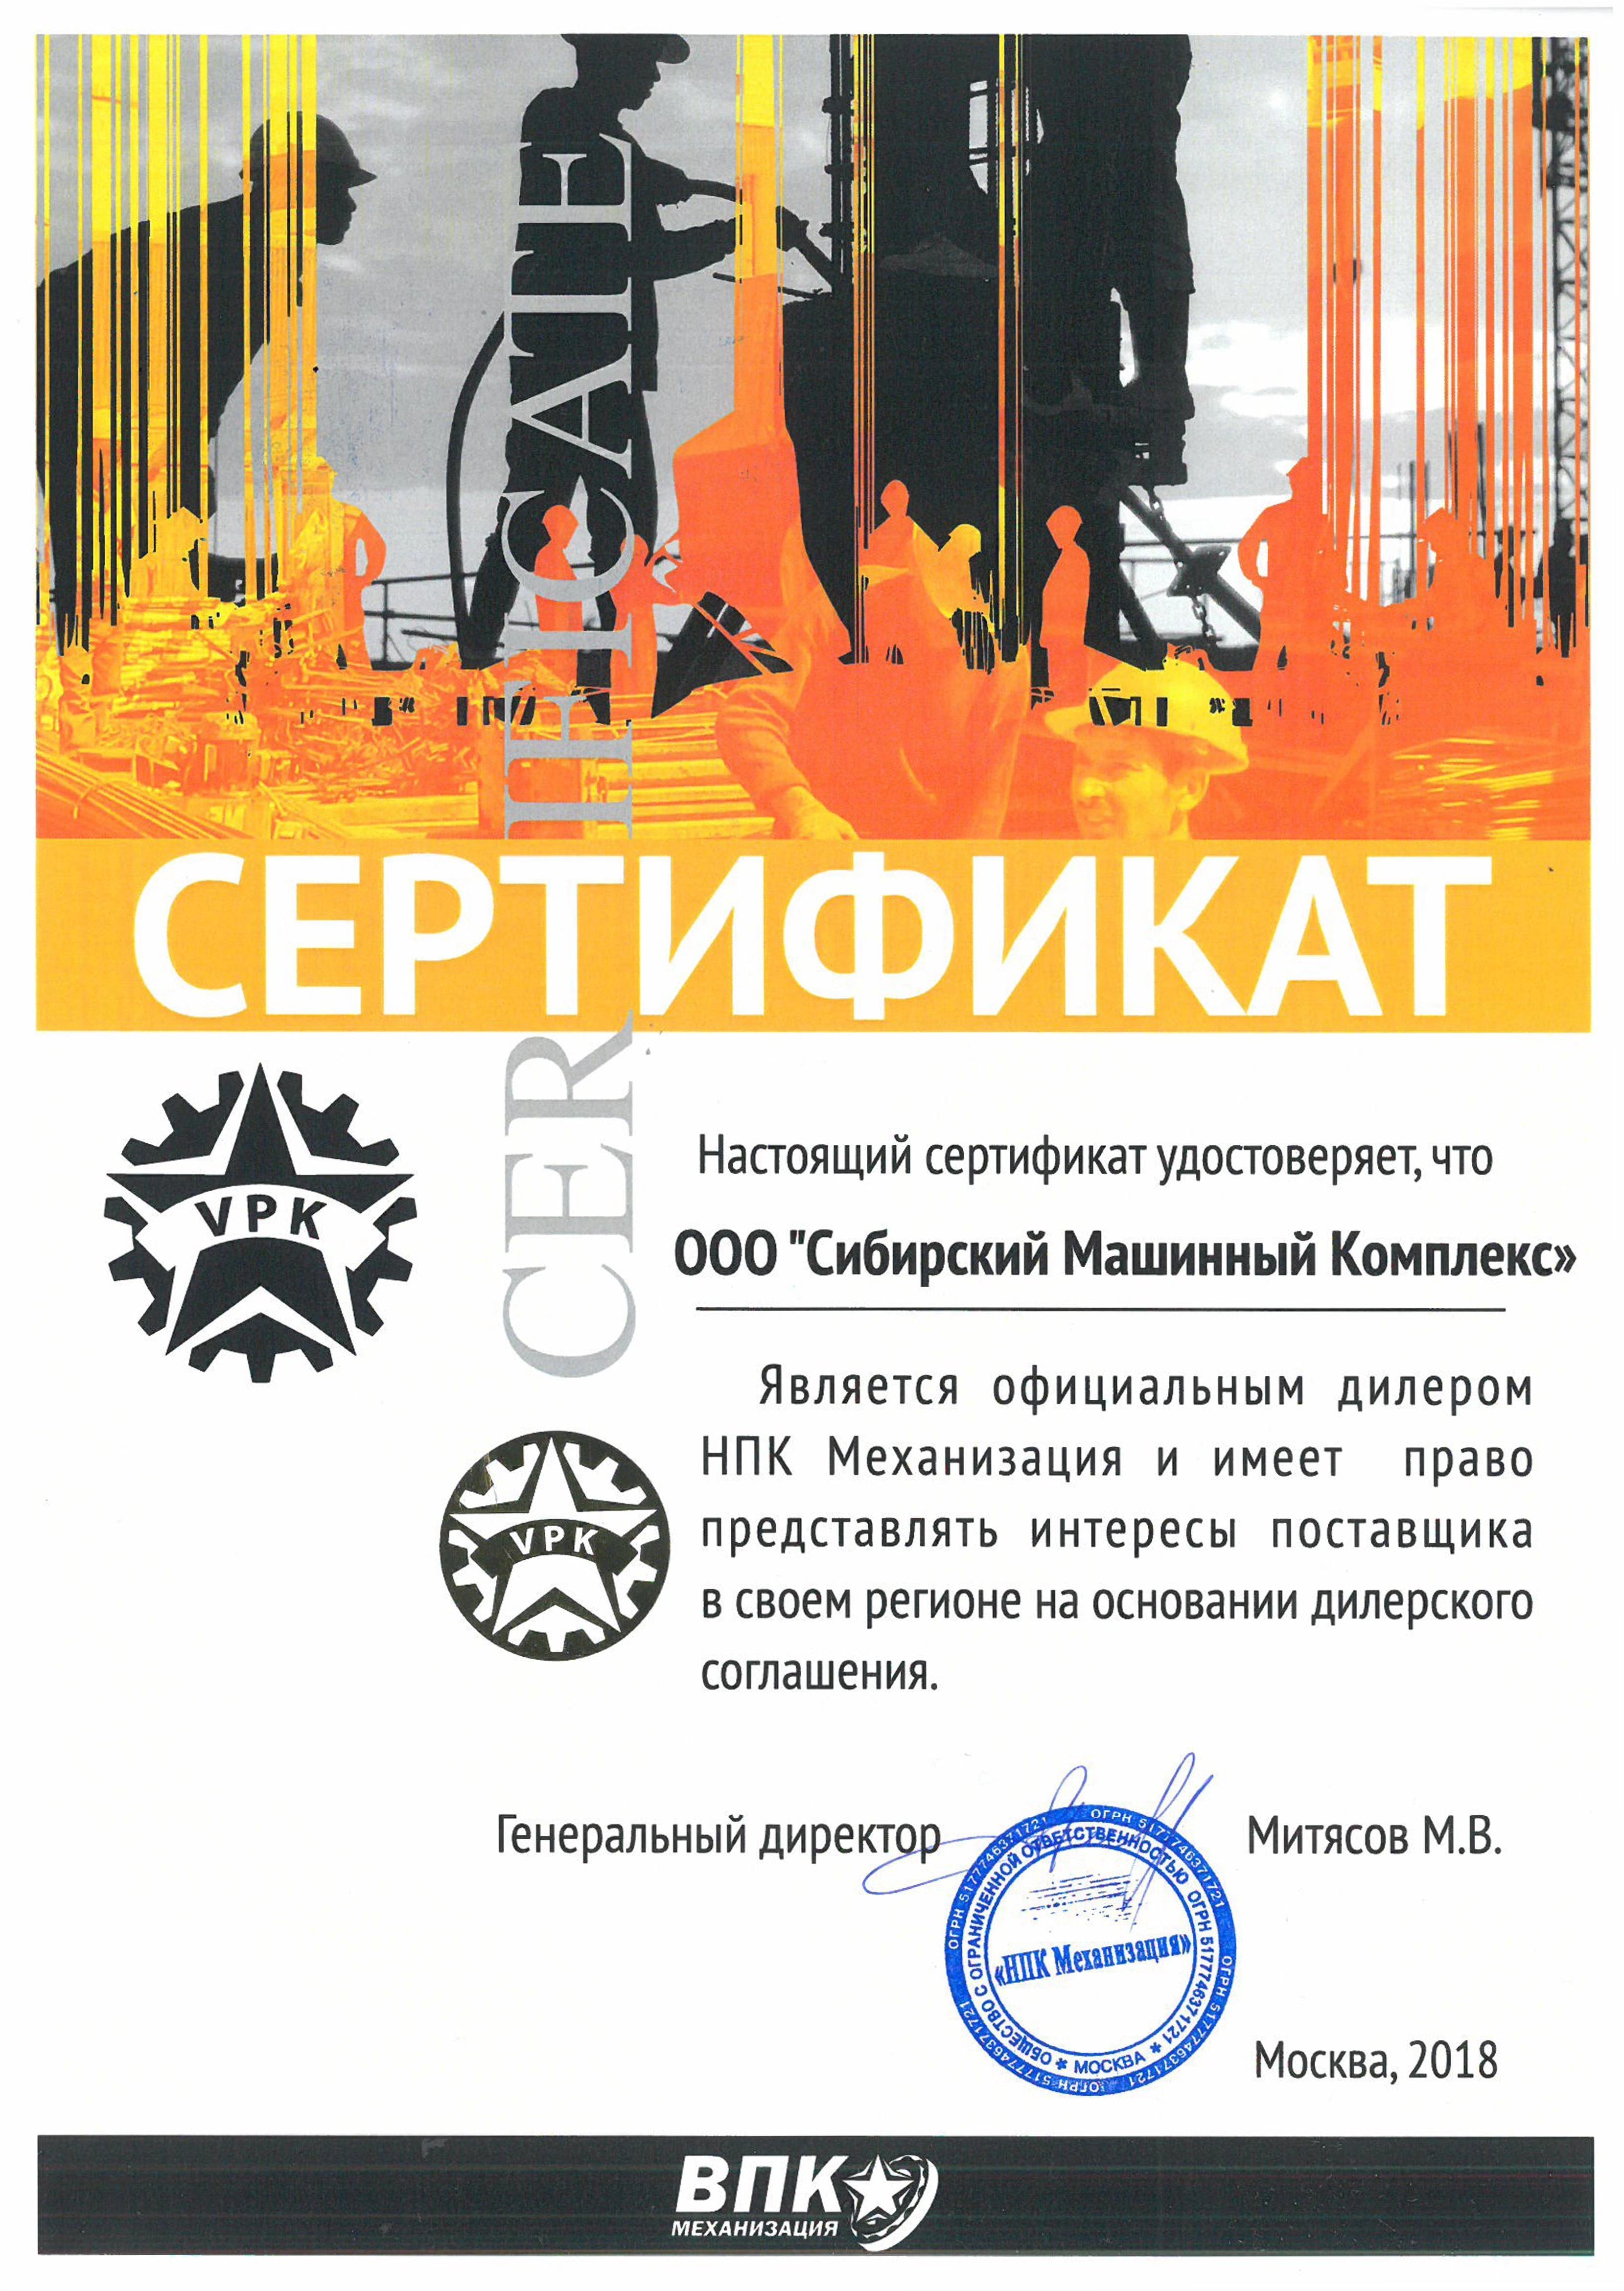 Сертификат дилерства ВПК Механизация – СМК г. Норильск